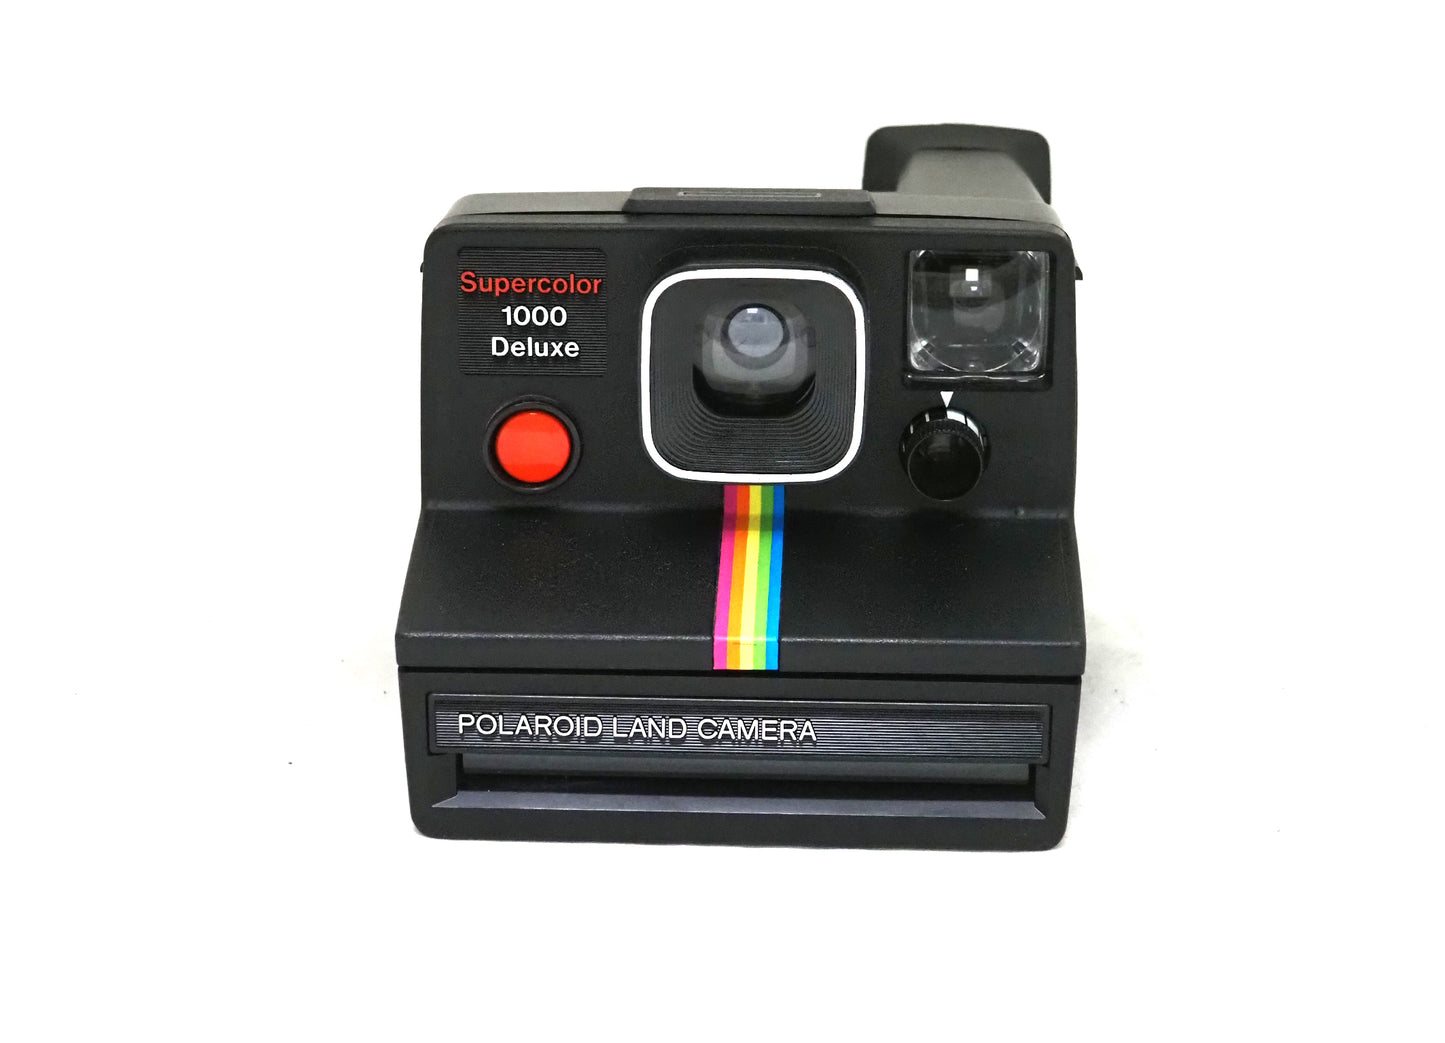 Polaroid Land Camera Supercolor 1000 Deluxe